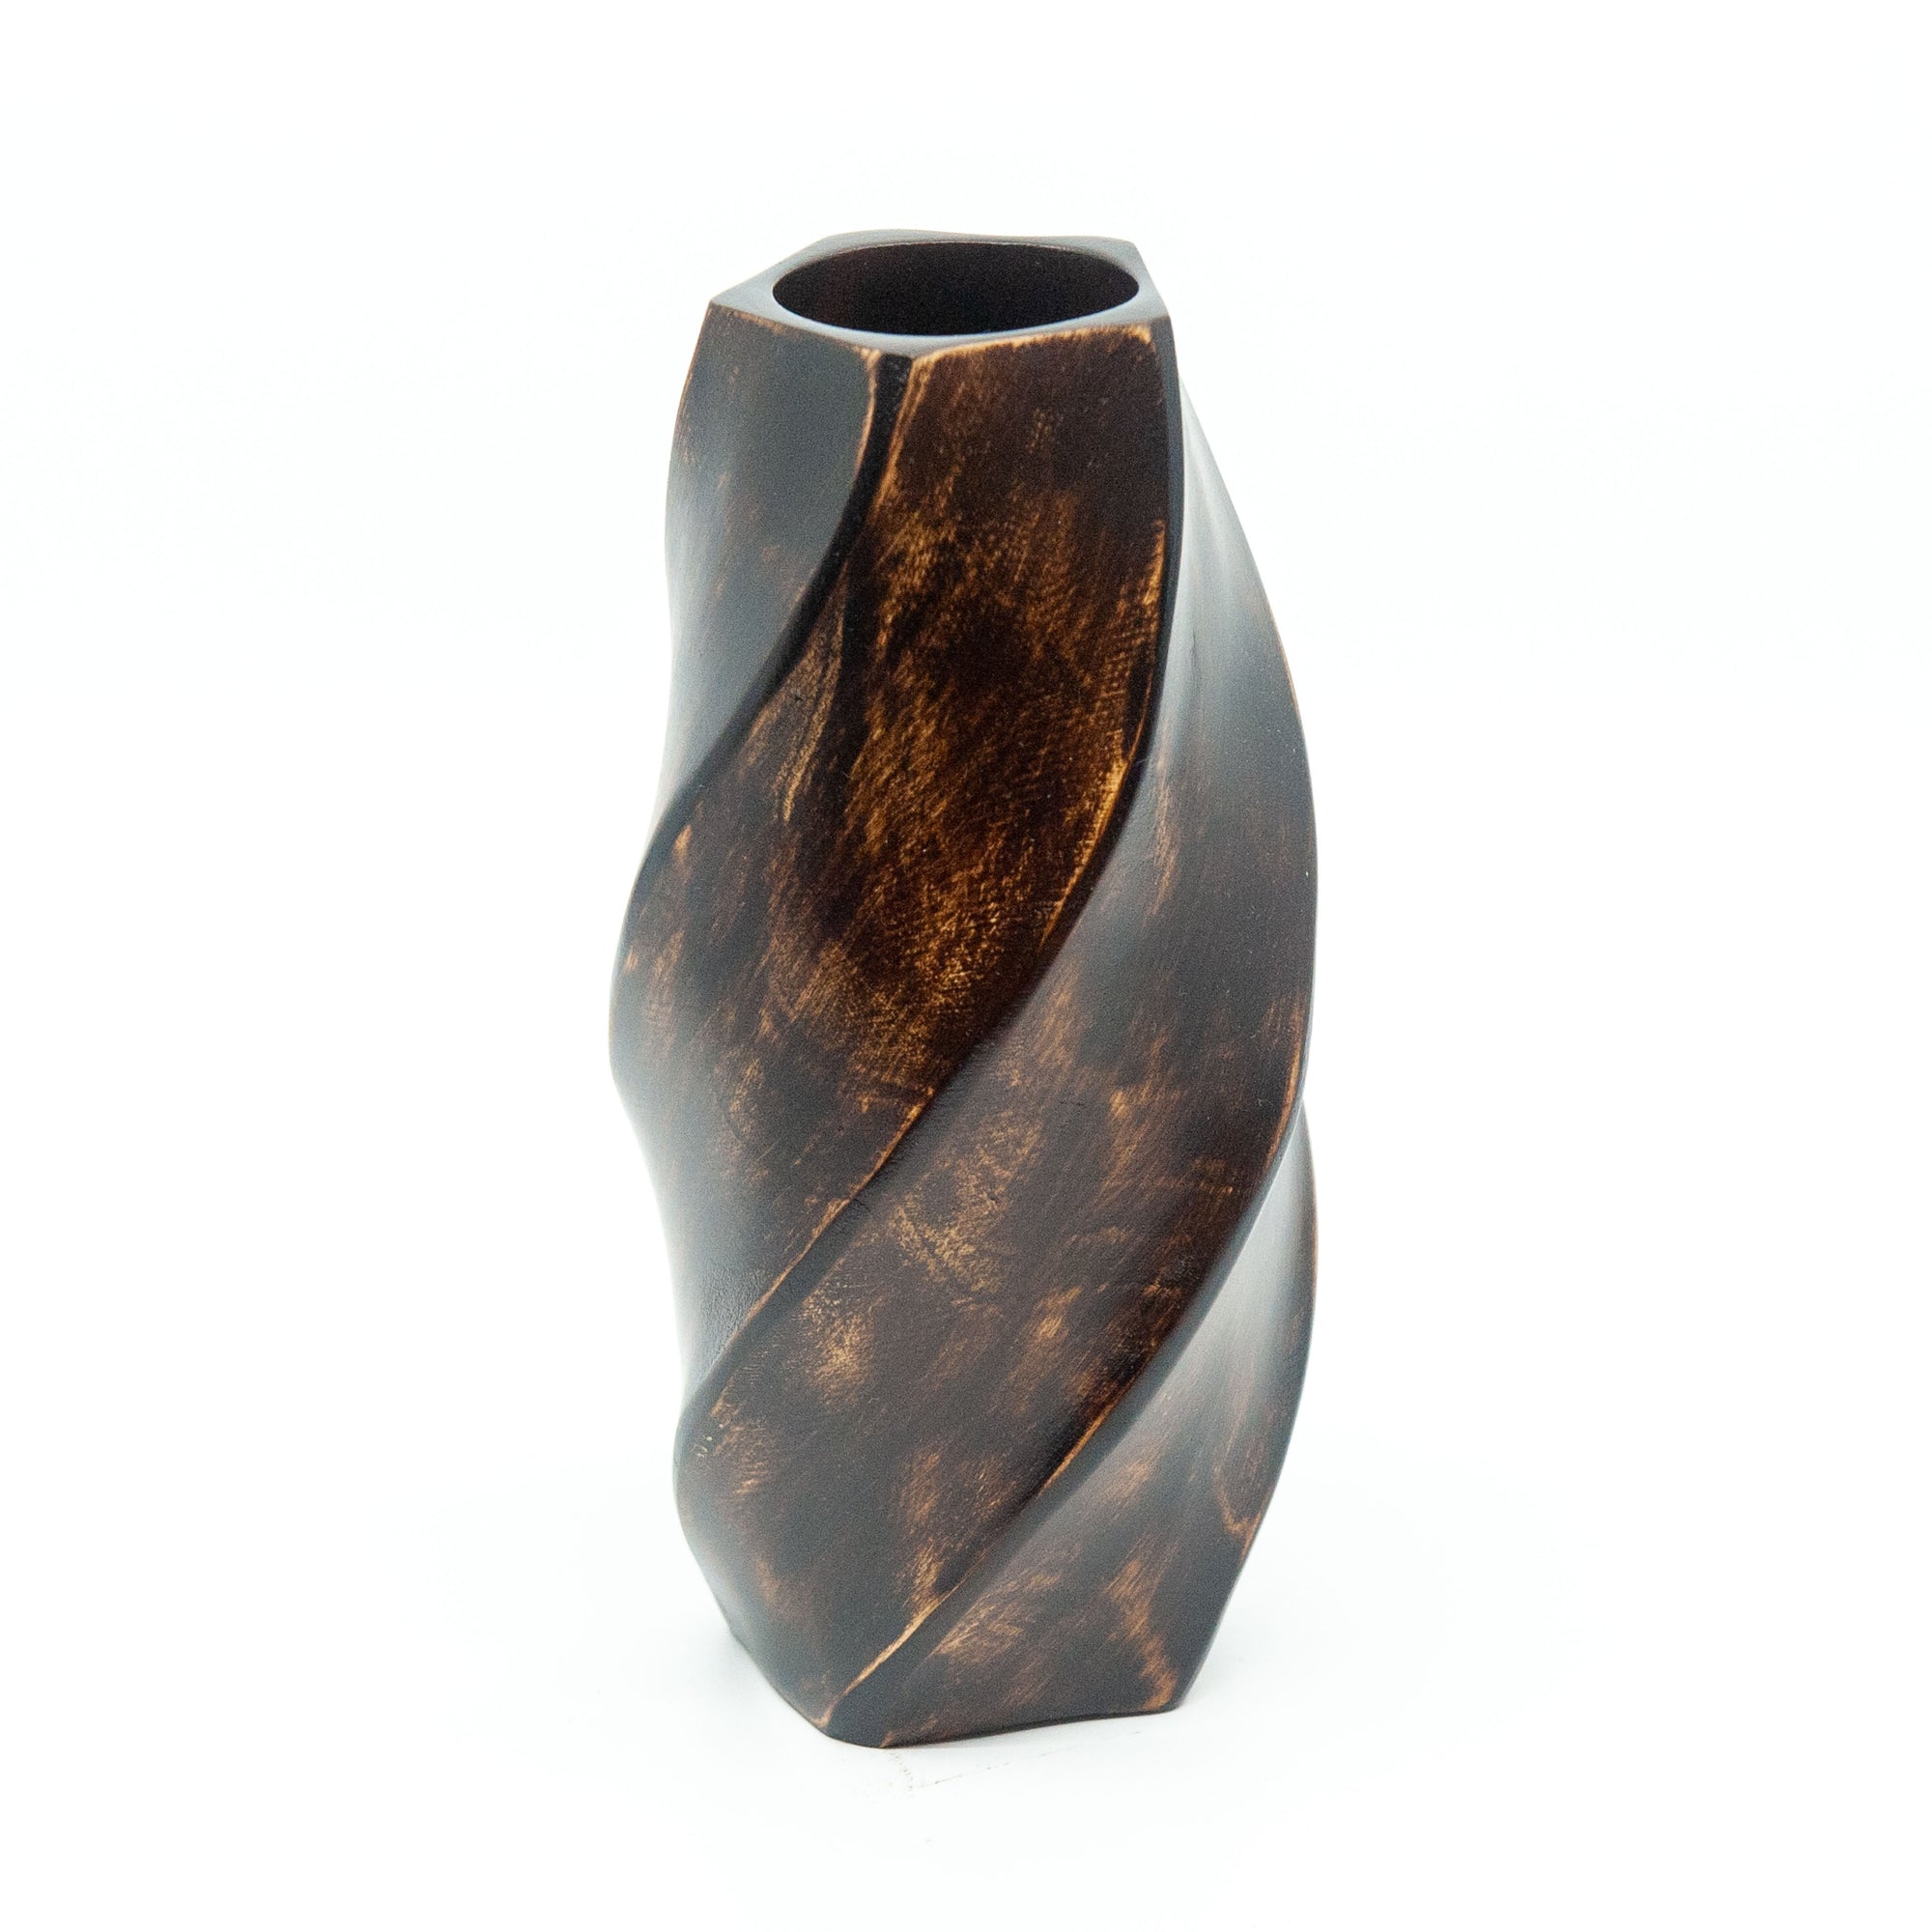 Mango Wood Spiral Carved Vase - 8"